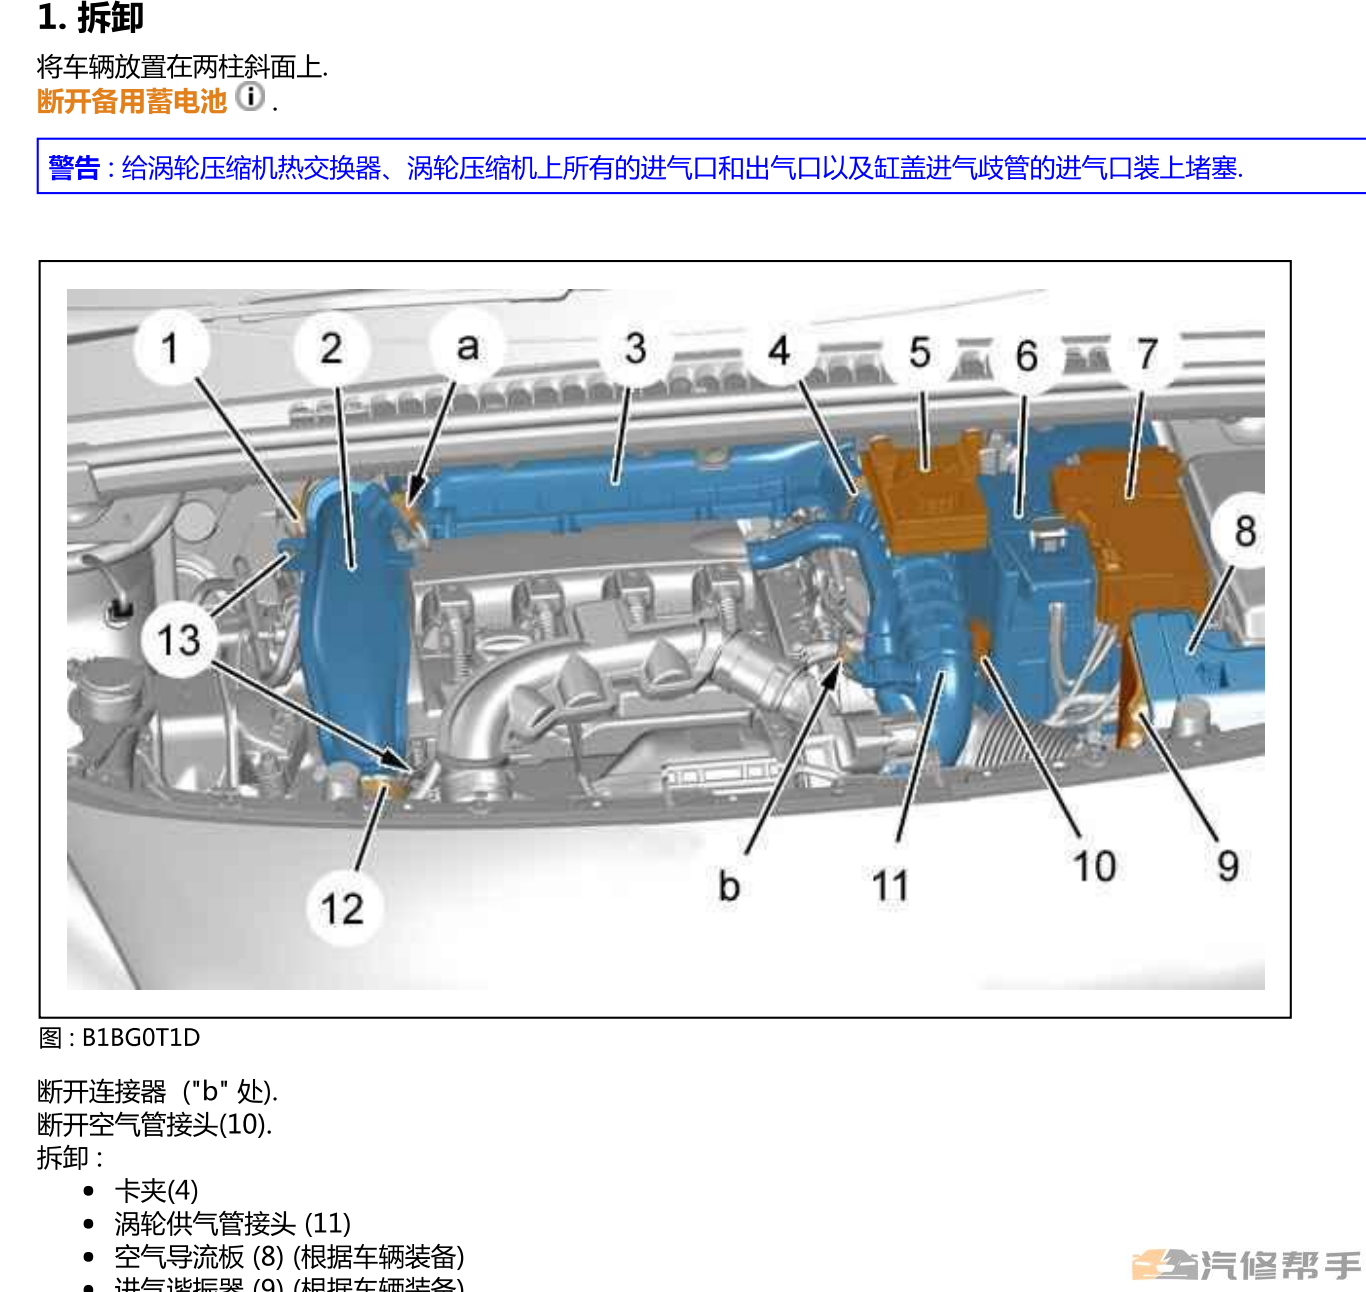 2014年款雪铁龙DS5原厂维修手册电路图线路图资料下载